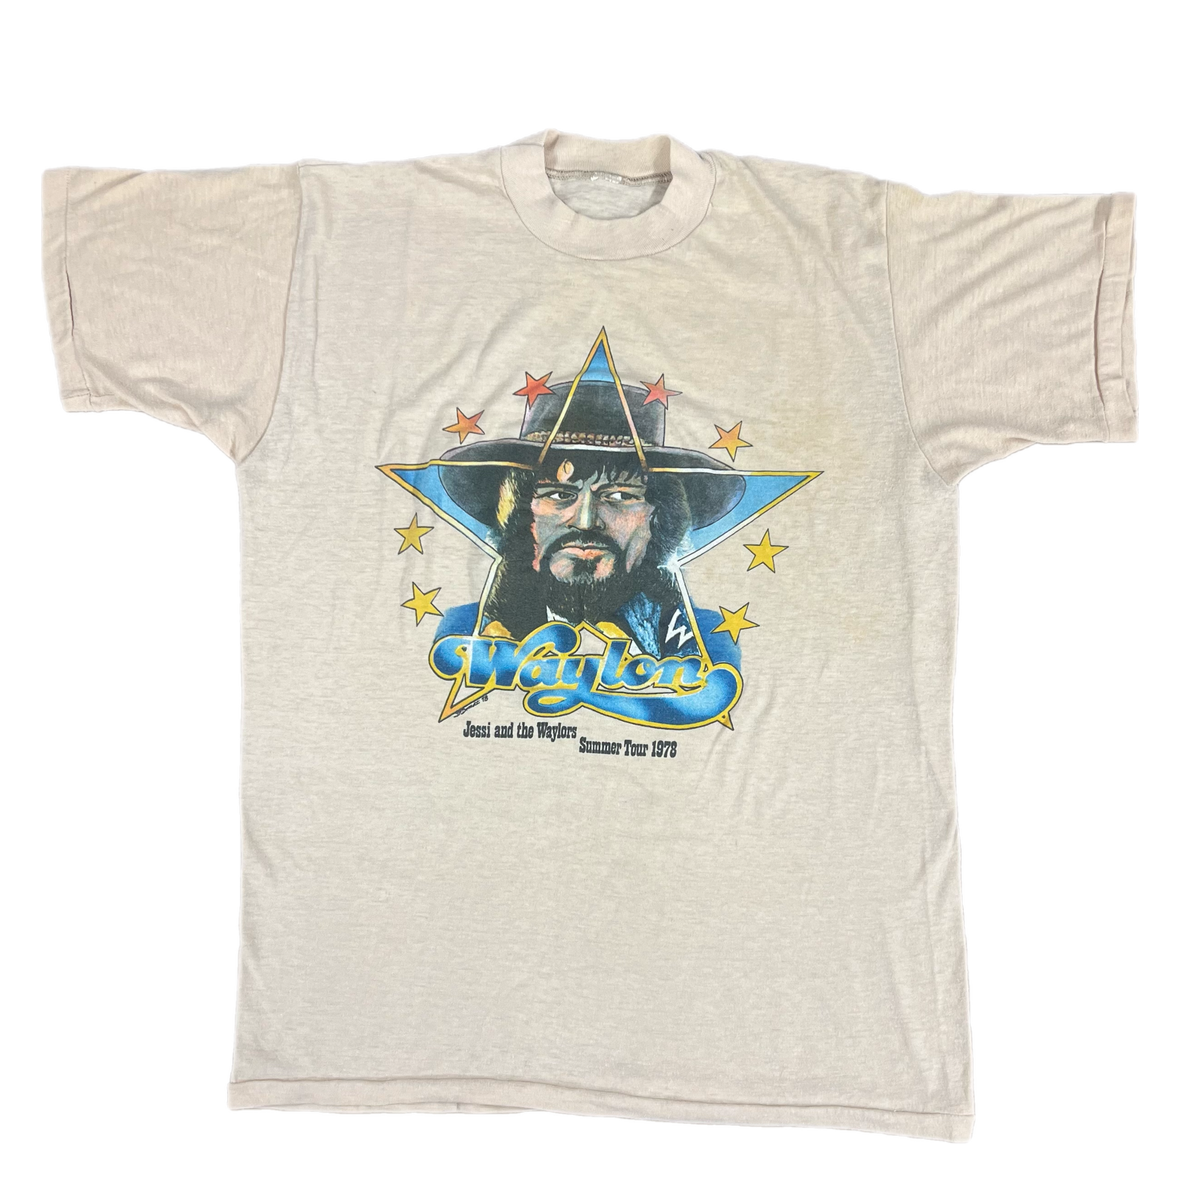 Vintage Waylon Jennings &quot;Jessi And The Waylors&quot; Summer Tour 1978 T-Shirt